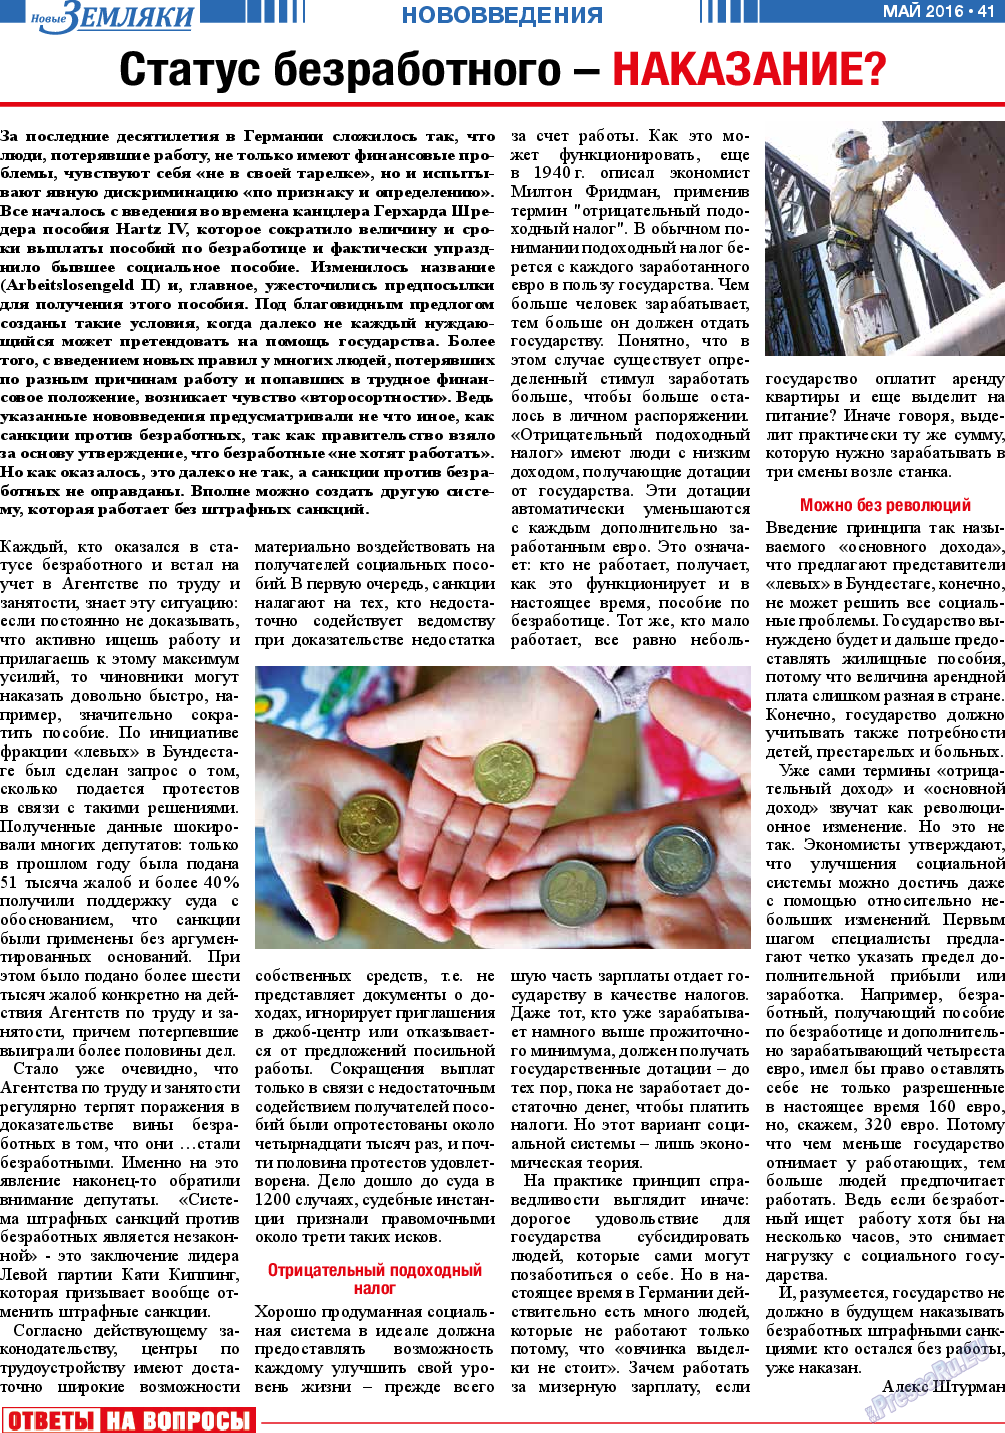 Новые Земляки (газета). 2016 год, номер 5, стр. 41